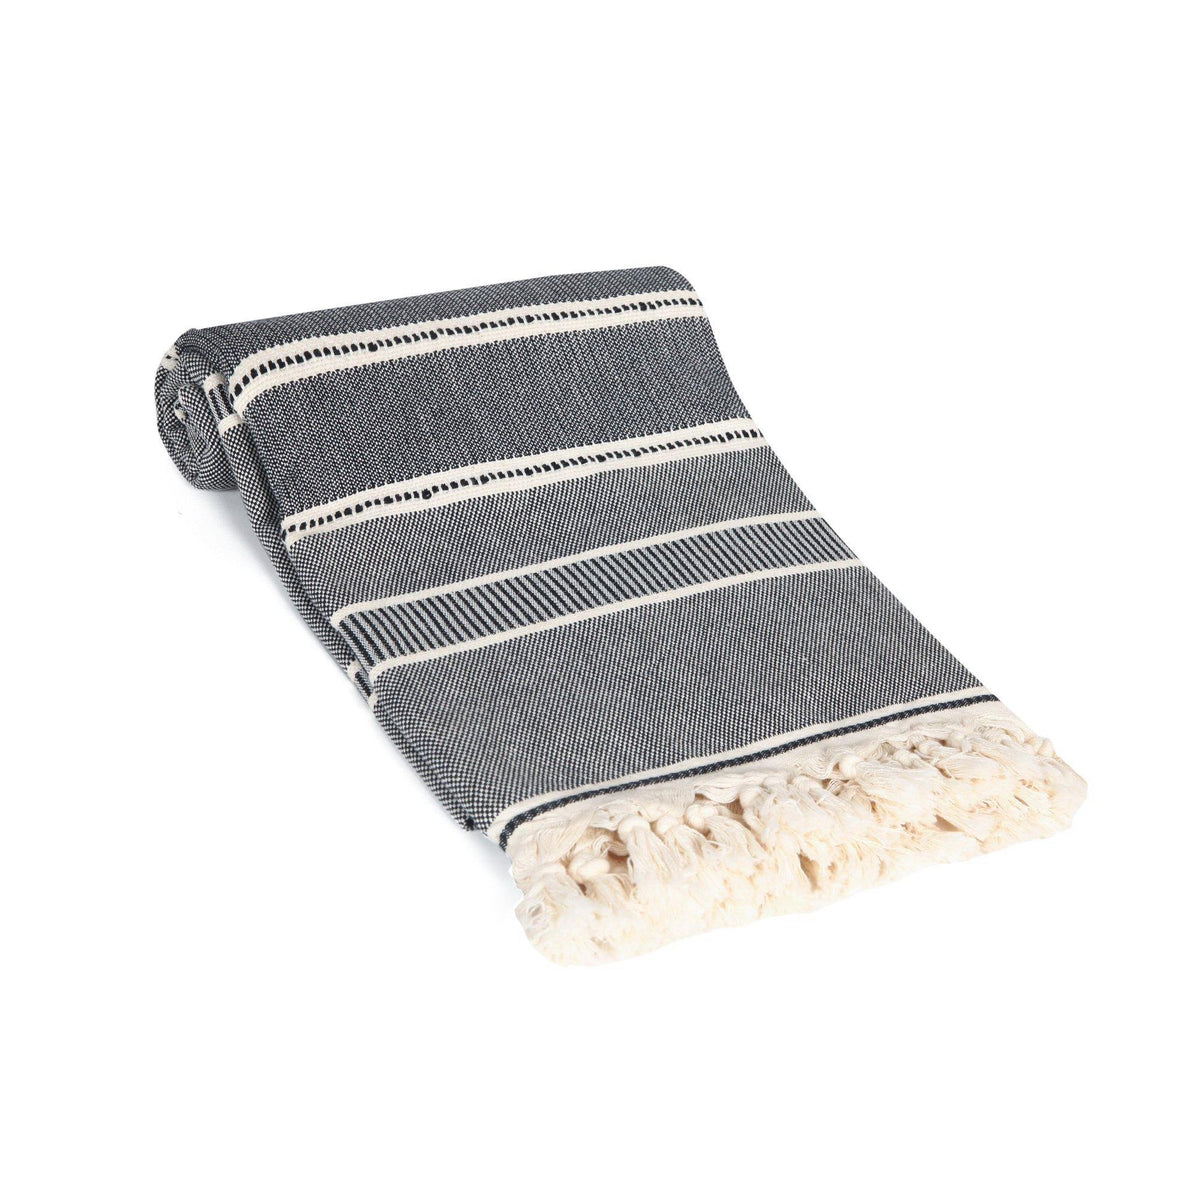 Tetra Turkish Towel / Throw